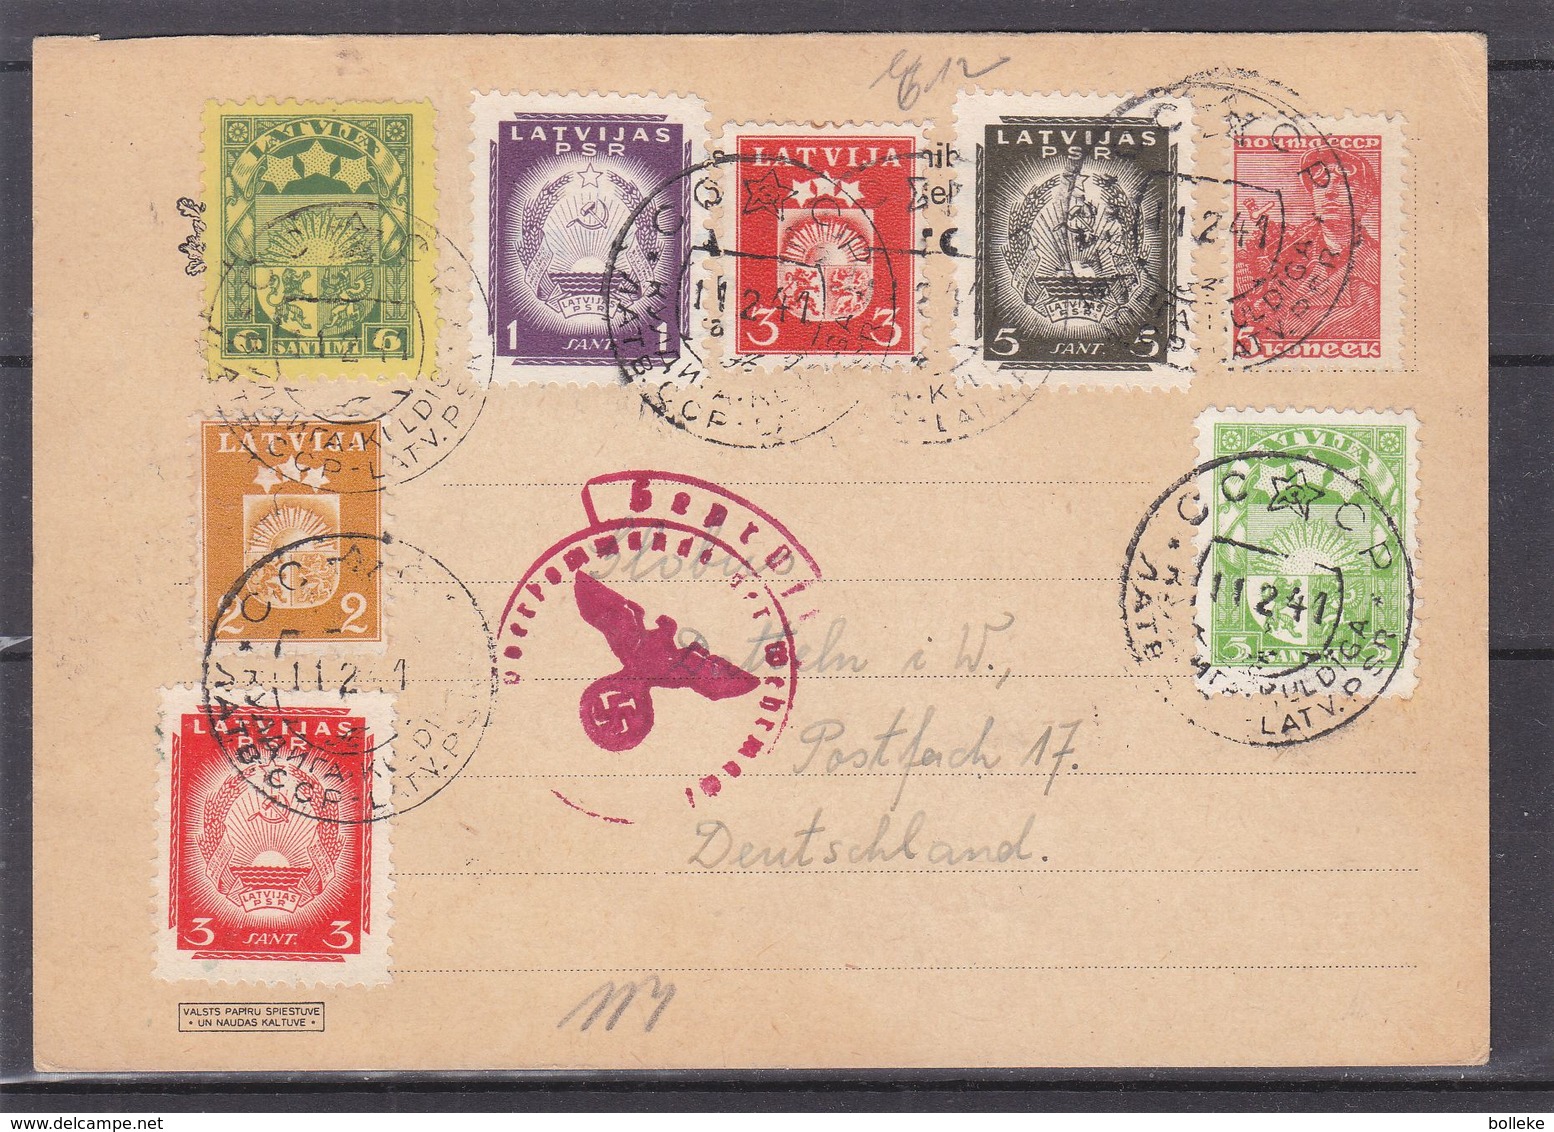 Lettonie - Carte Postale De 1941 - Oblit Kuldiga - Exp Vers Datteln - Avec Censure - Avec Timbres Russes Et Lettoniens - Lettland